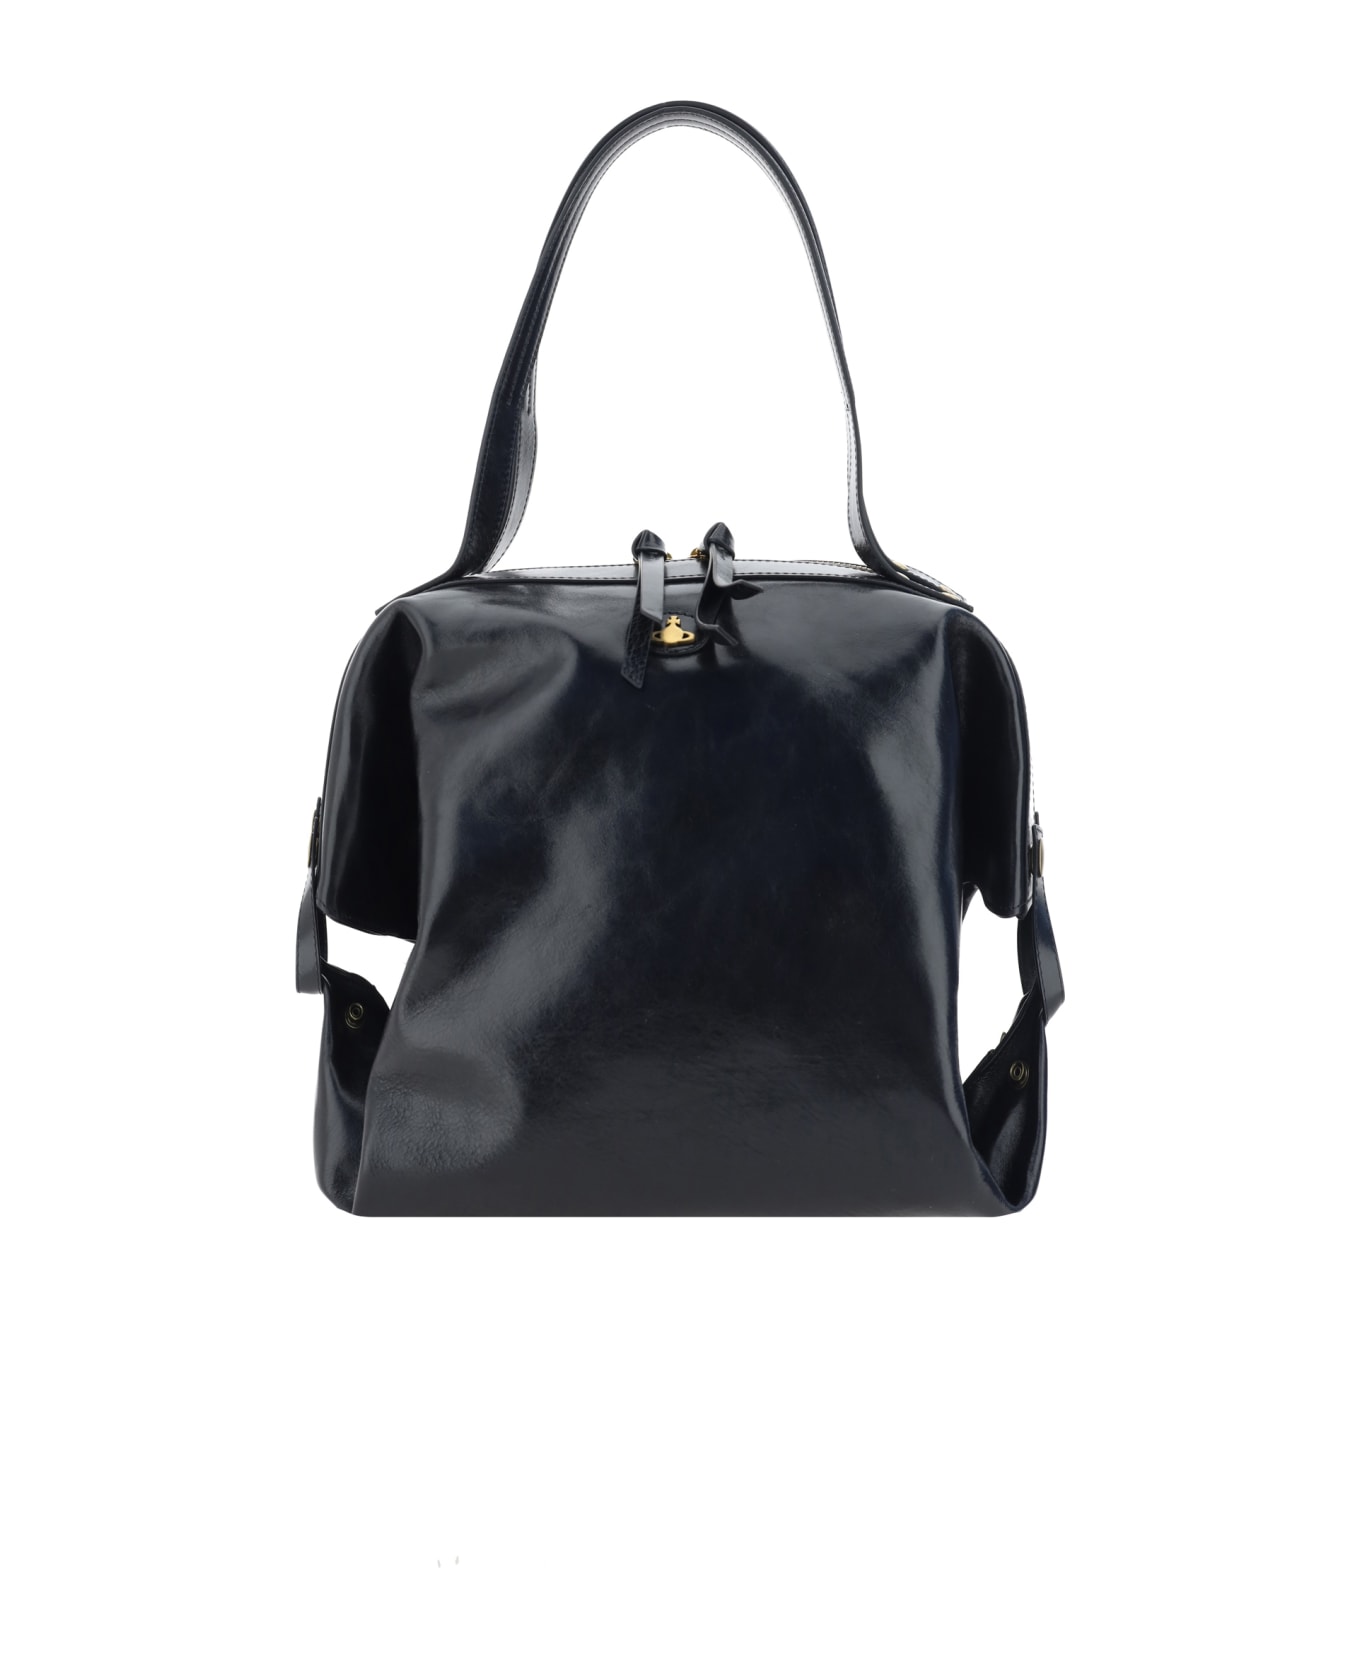 Vivienne Westwood Mara Shoulder Bag - Black